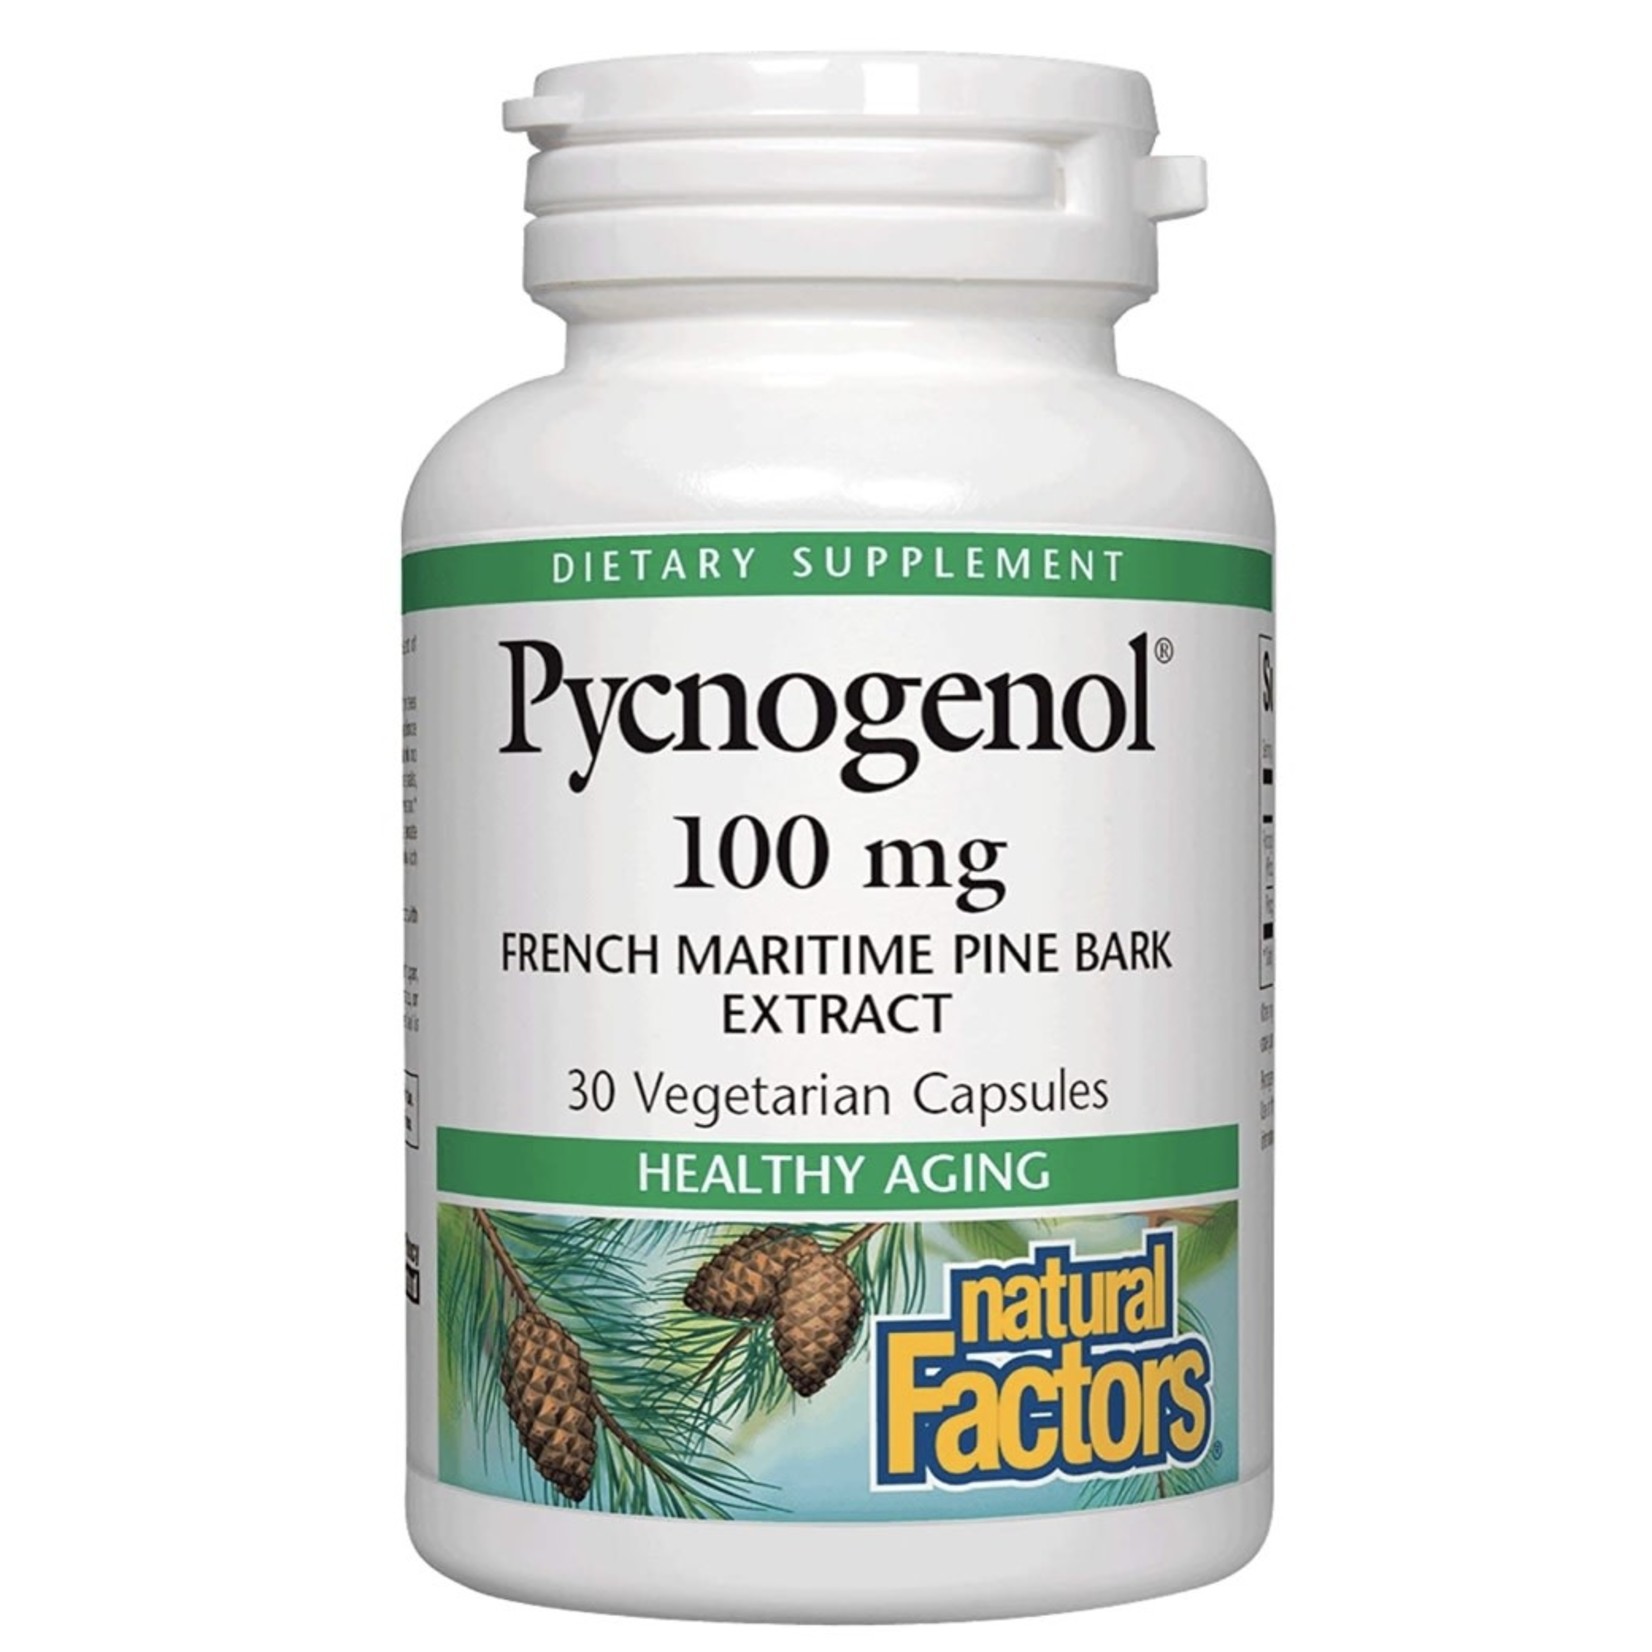 Natural Factors Natural Factors Pycnogenol 100mg 30 caps